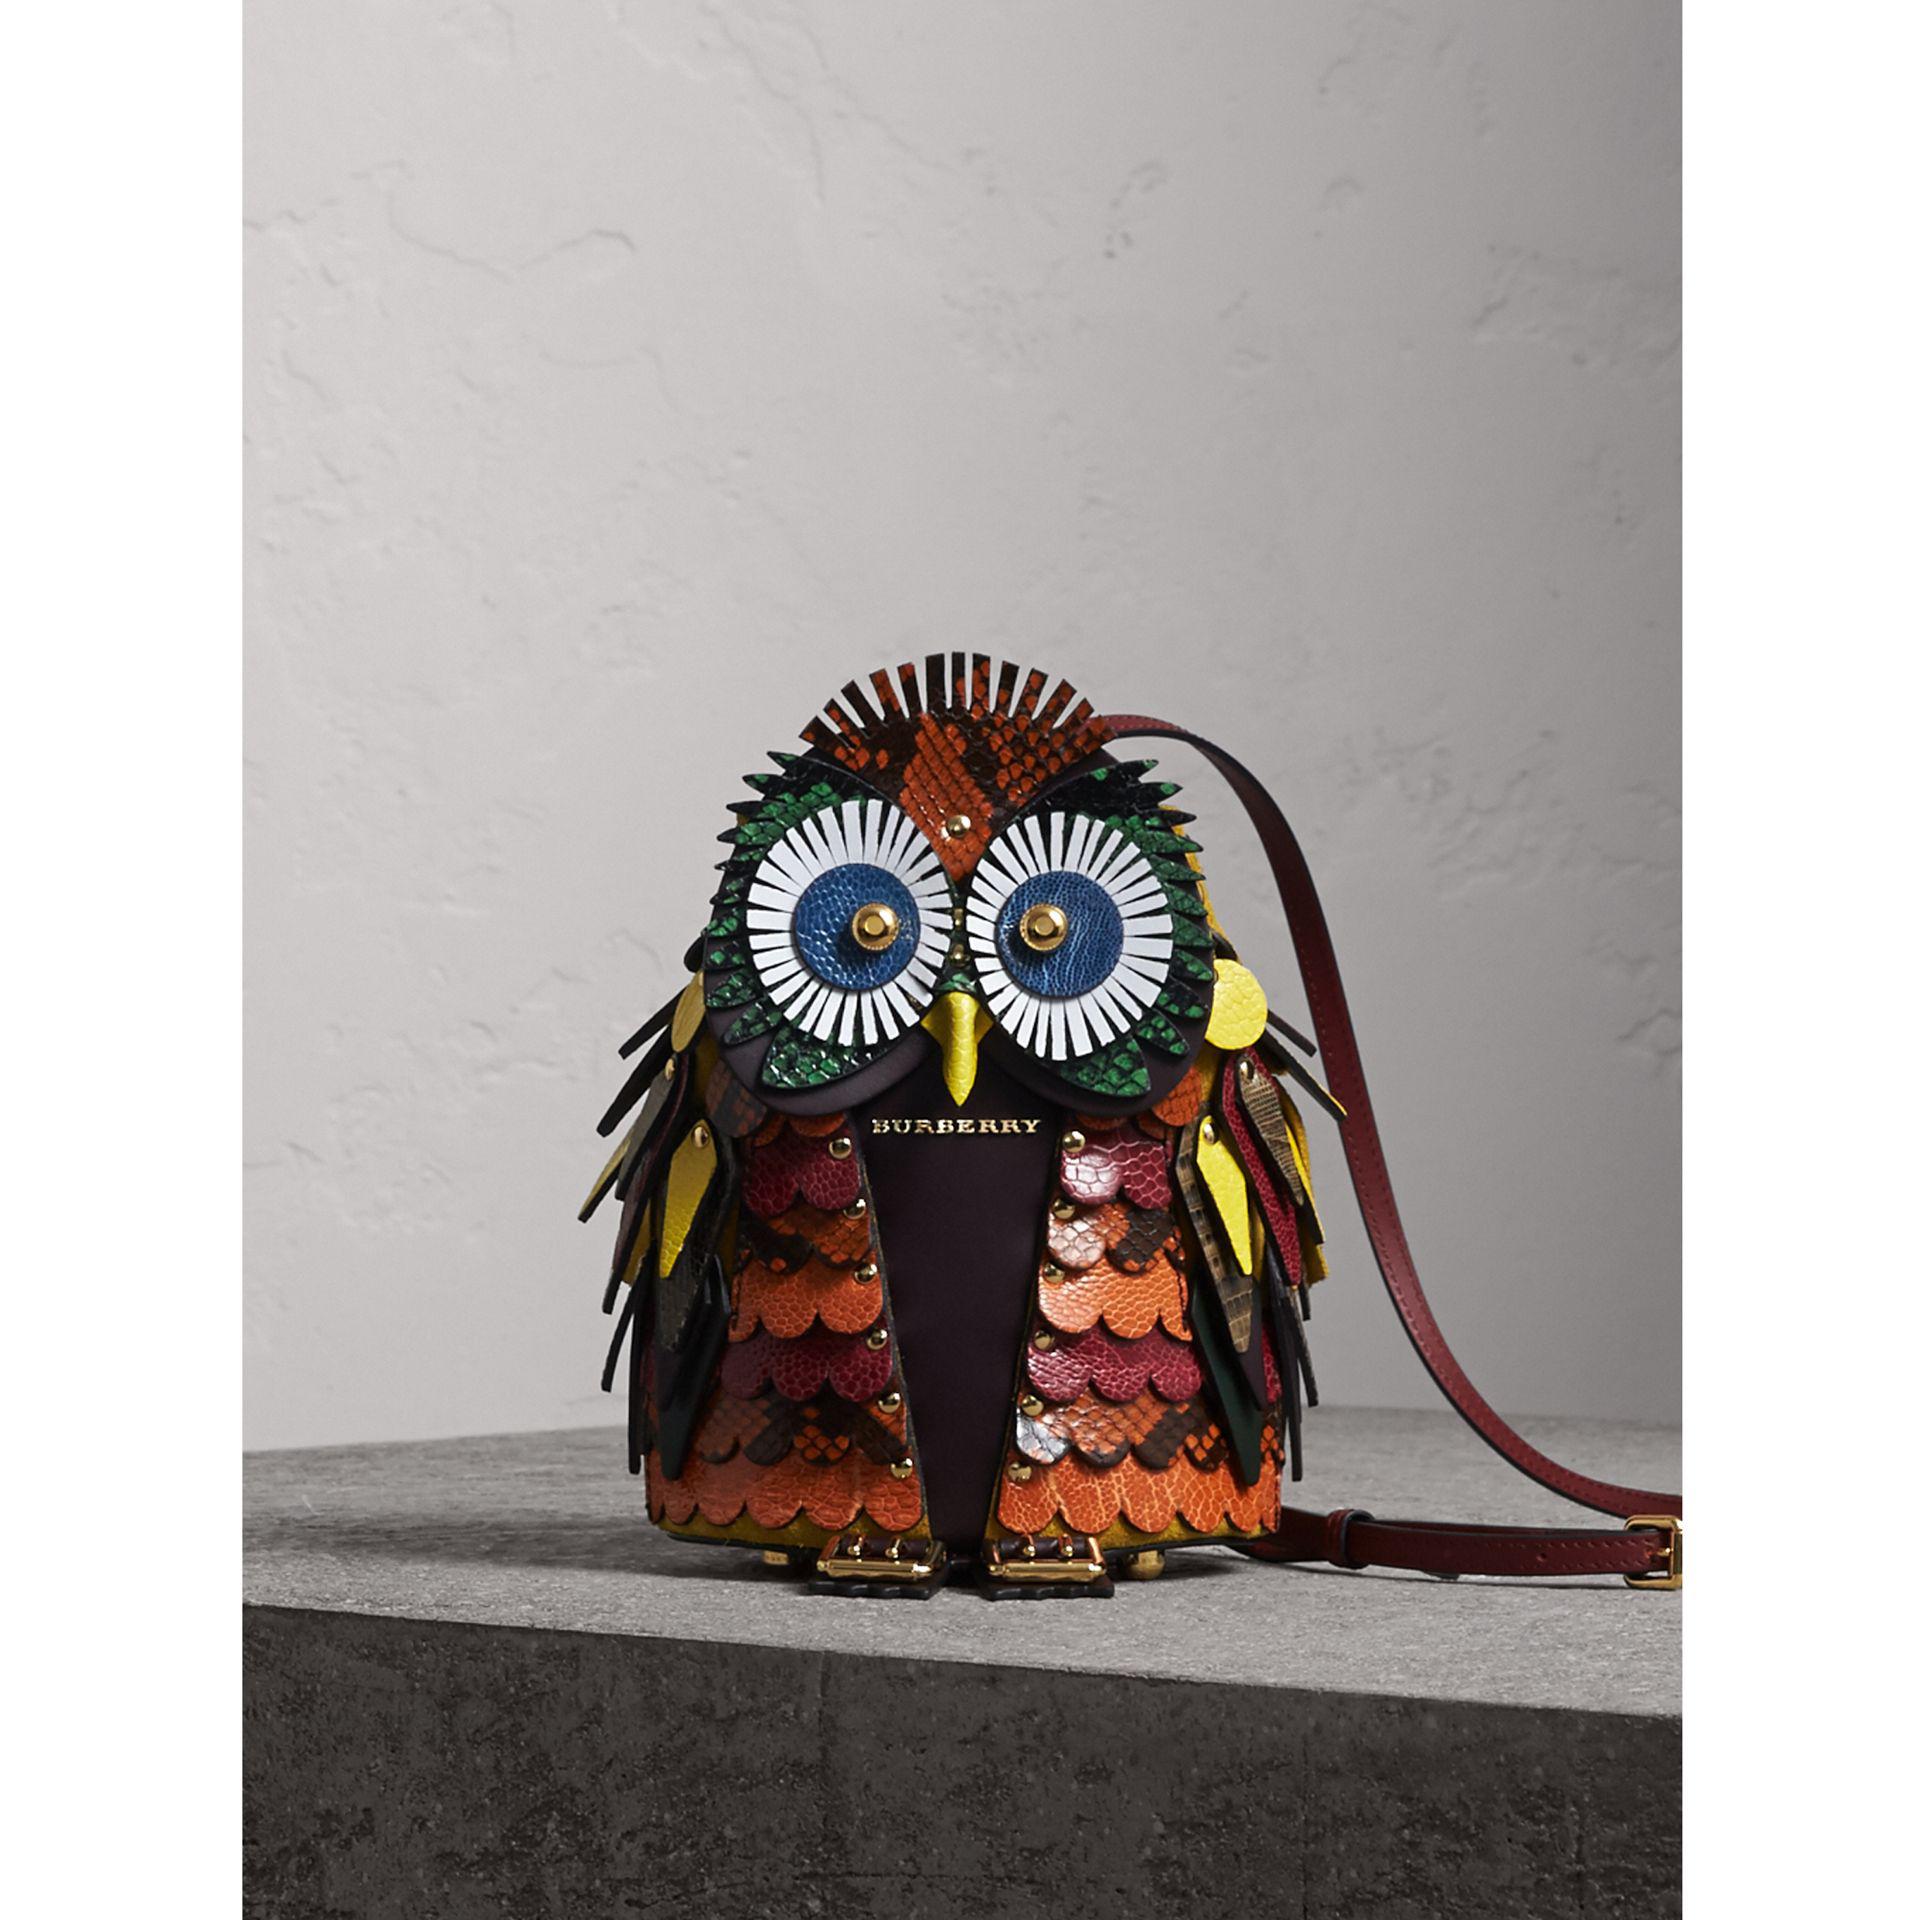 burberry owl purse